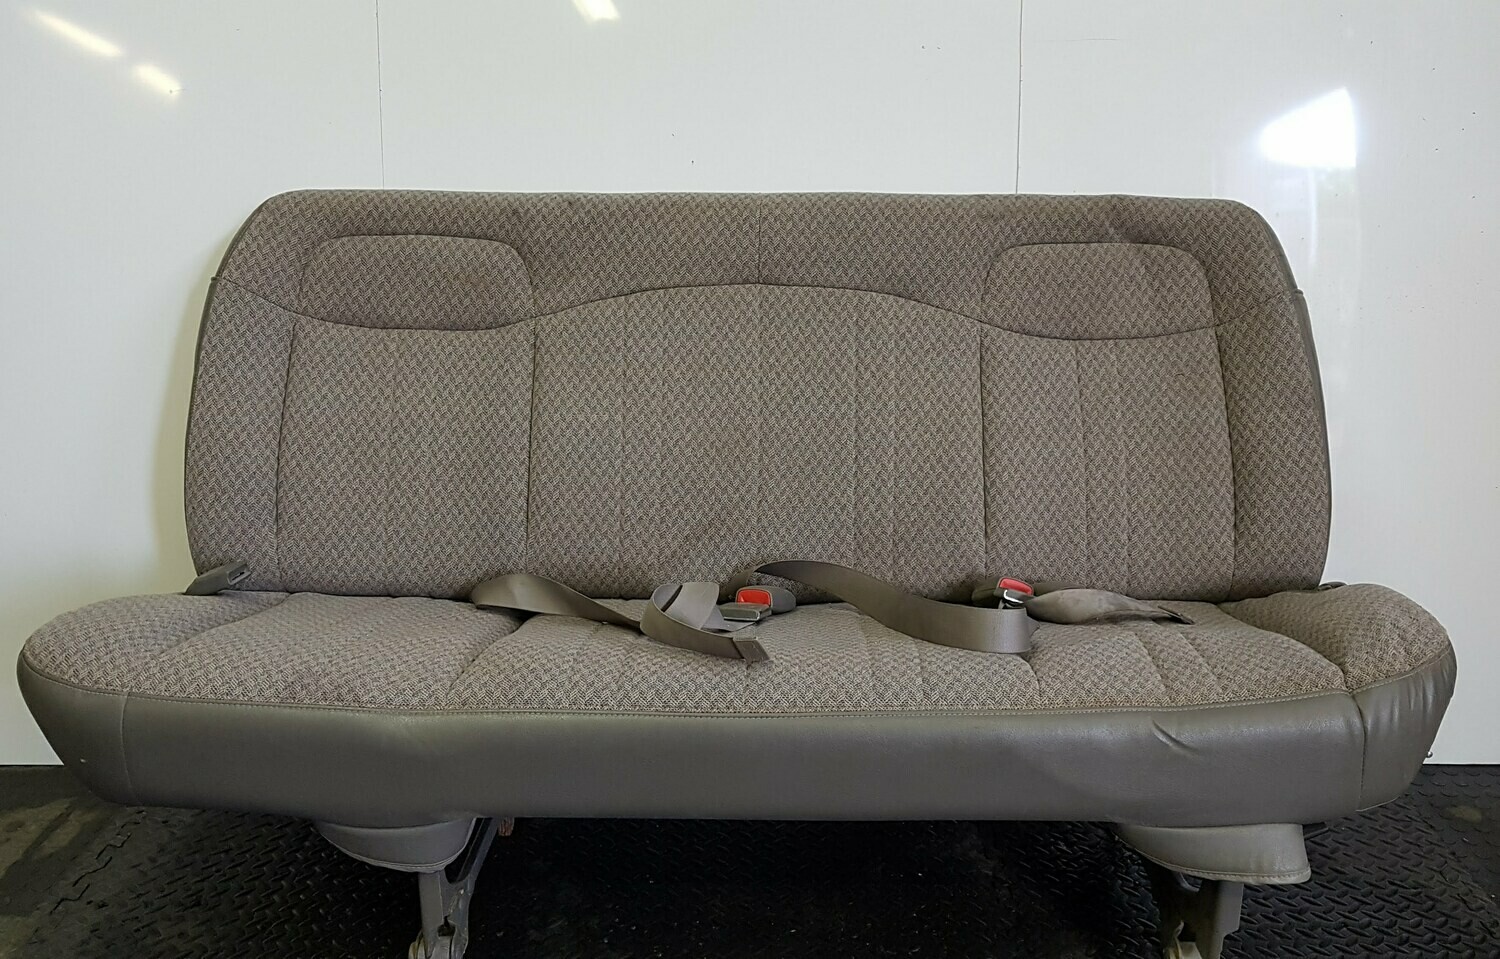 4 Passenger Bench Seat